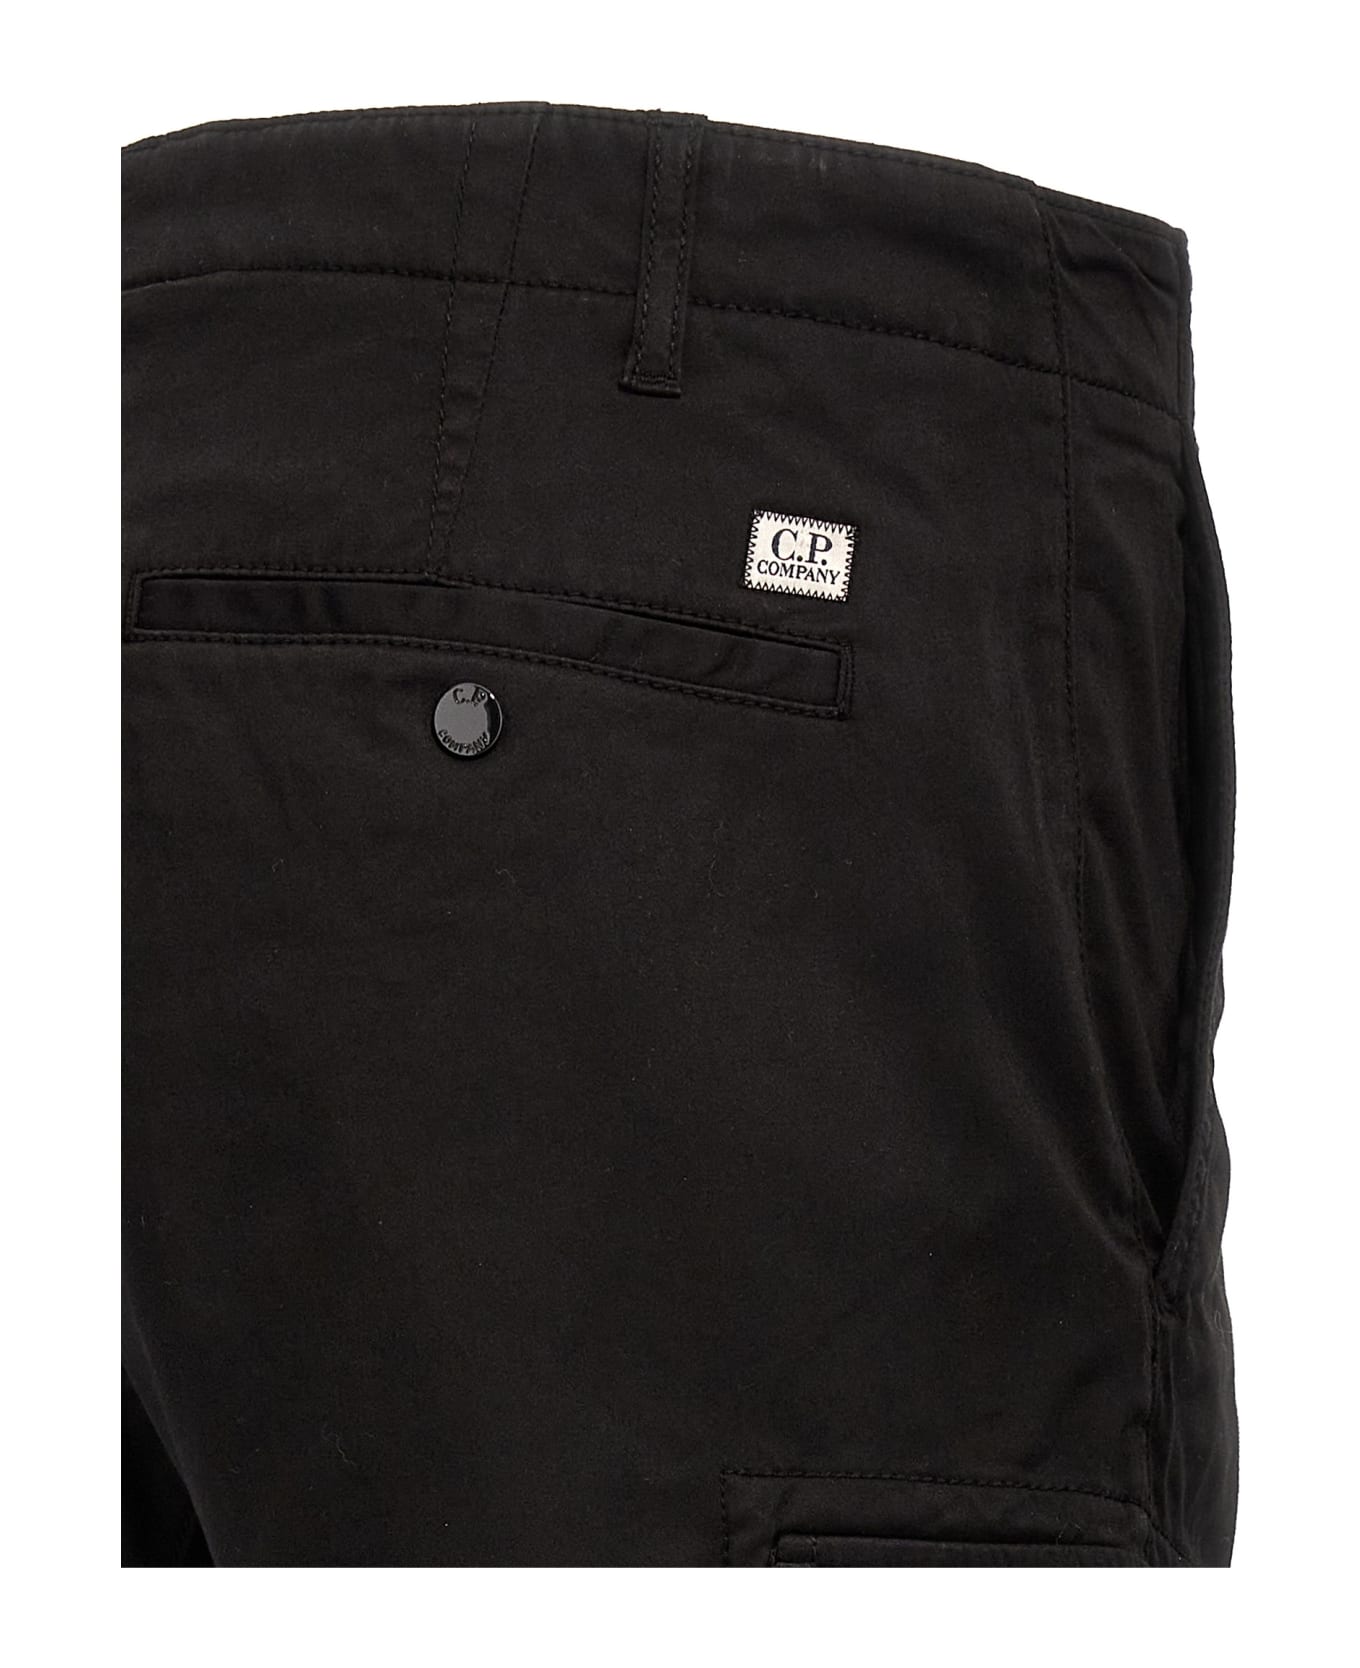 C.P. Company Cargo Pants - Black ボトムス